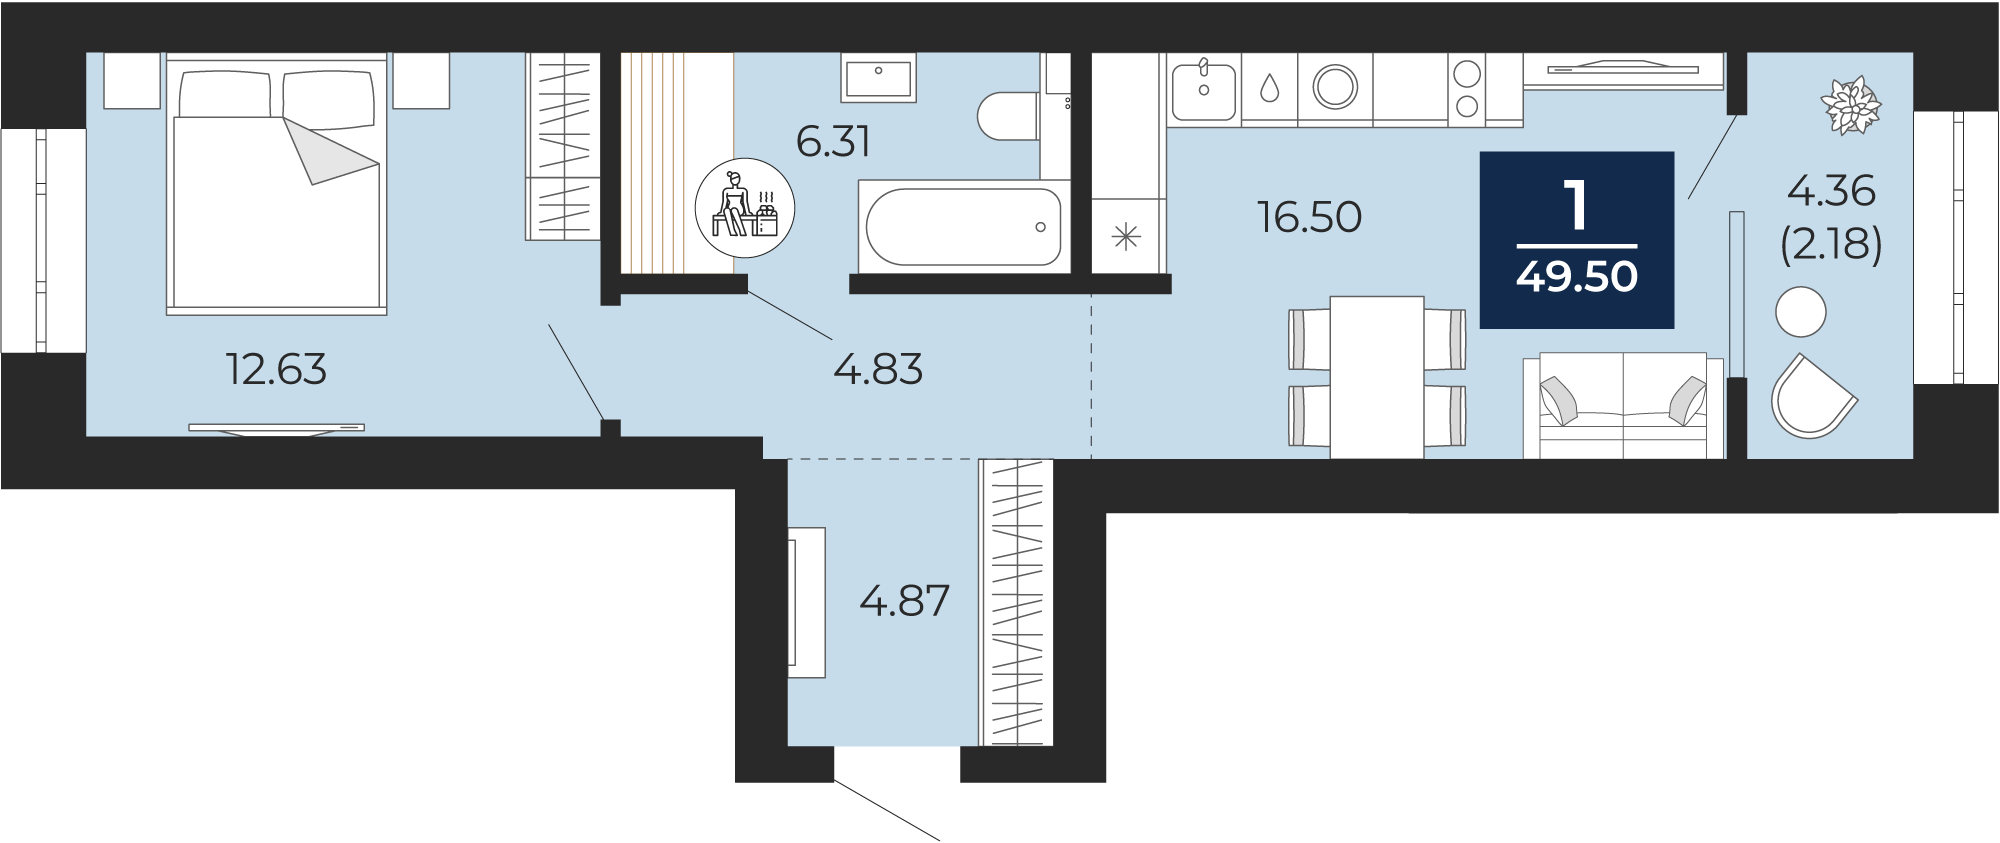 Квартира № 181, 1-комнатная, 49.5 кв. м, 10 этаж